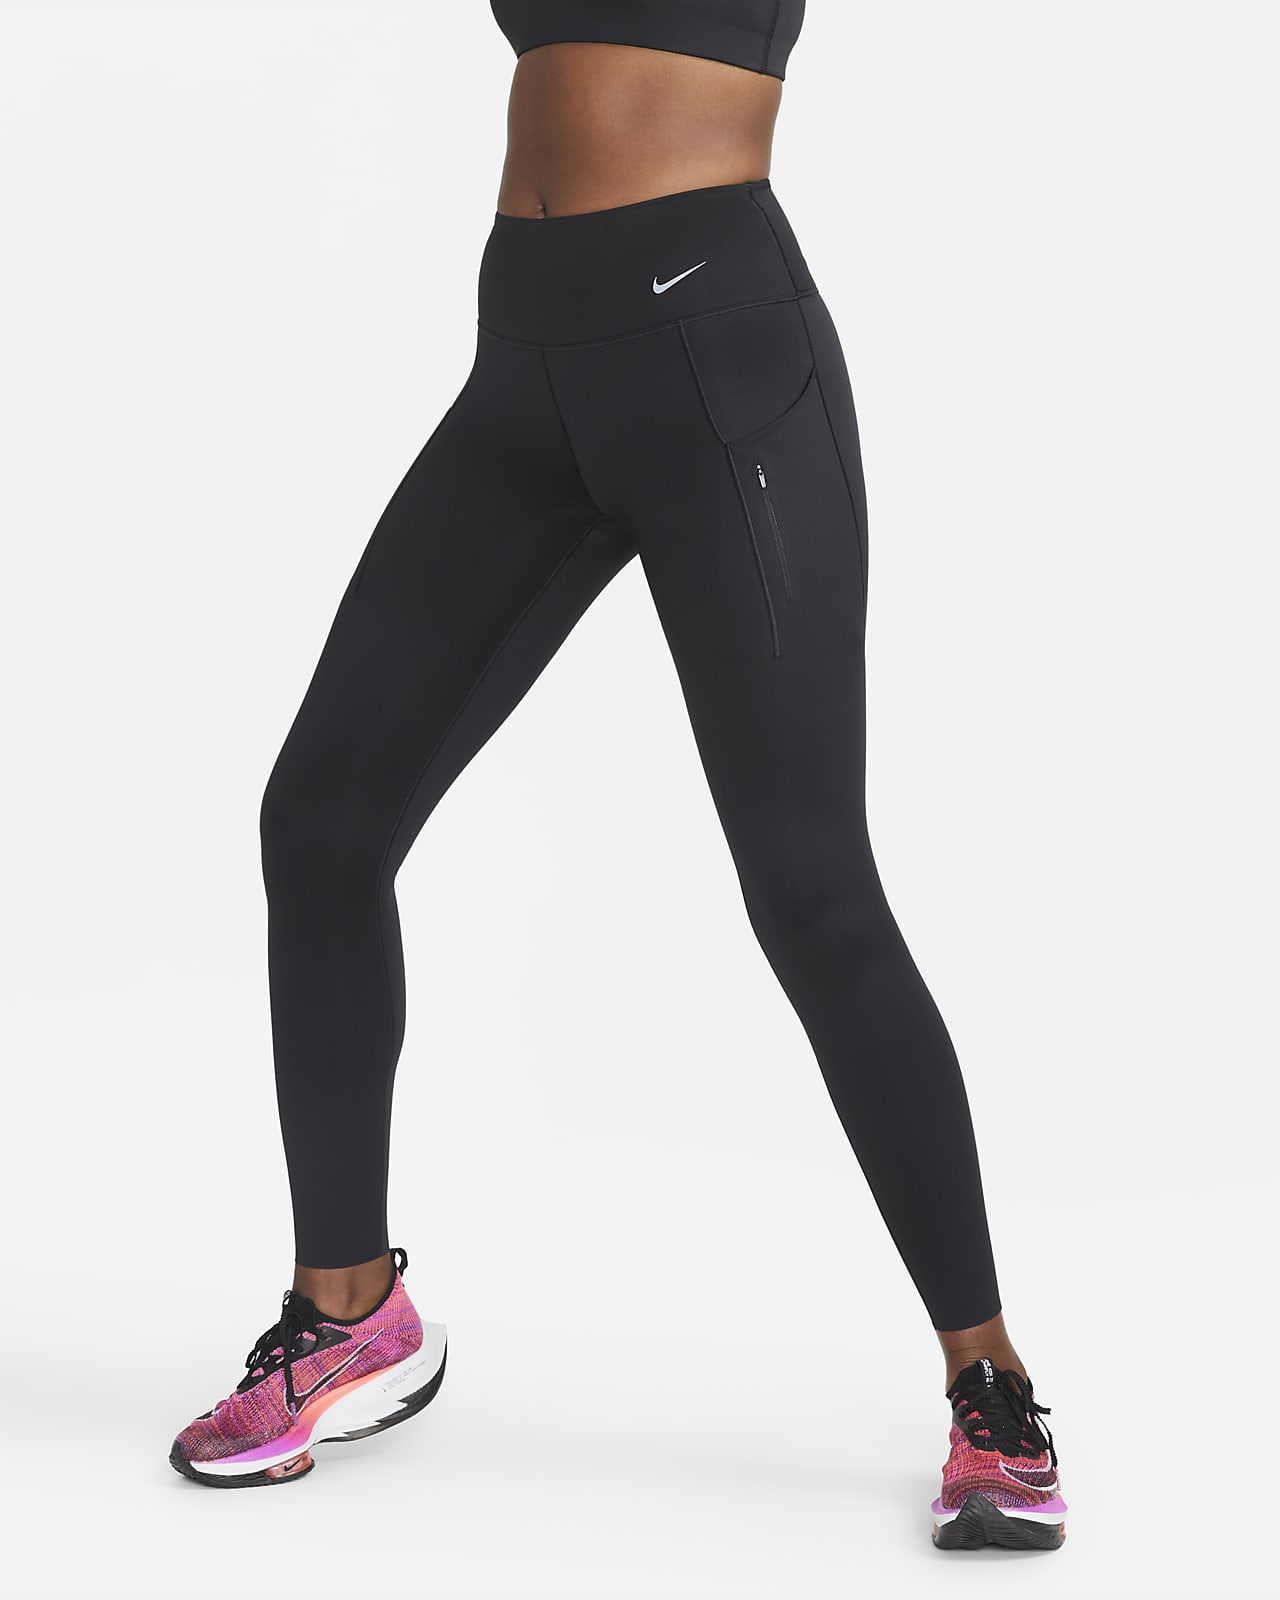 Ofertas en leggings y mallas para mujer. Nike ES